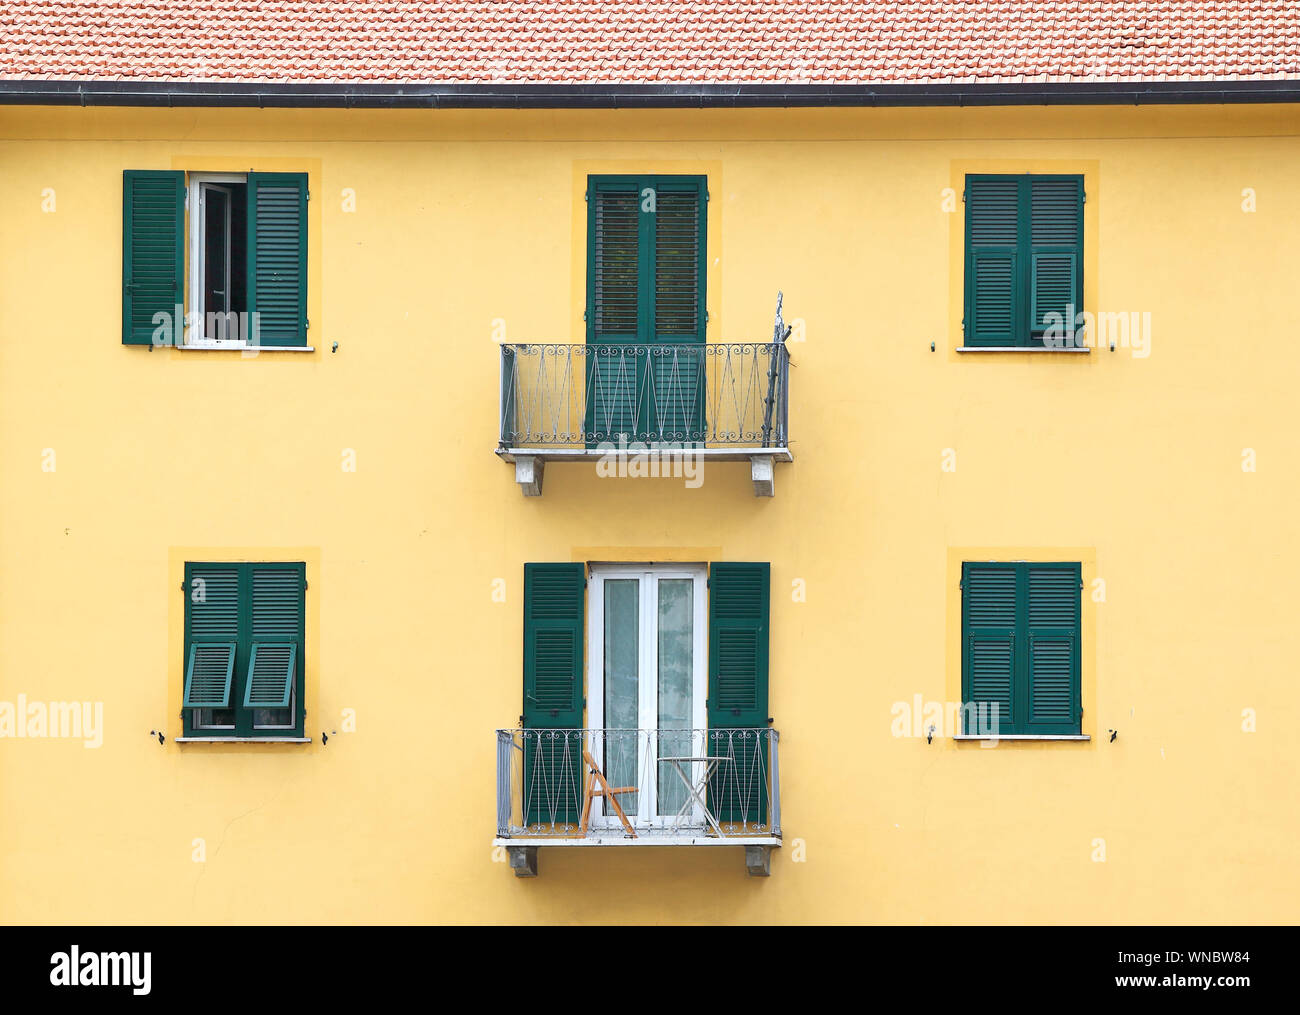 Détails de l'architecture italienne : balcons et fenêtres aux volets verts Banque D'Images